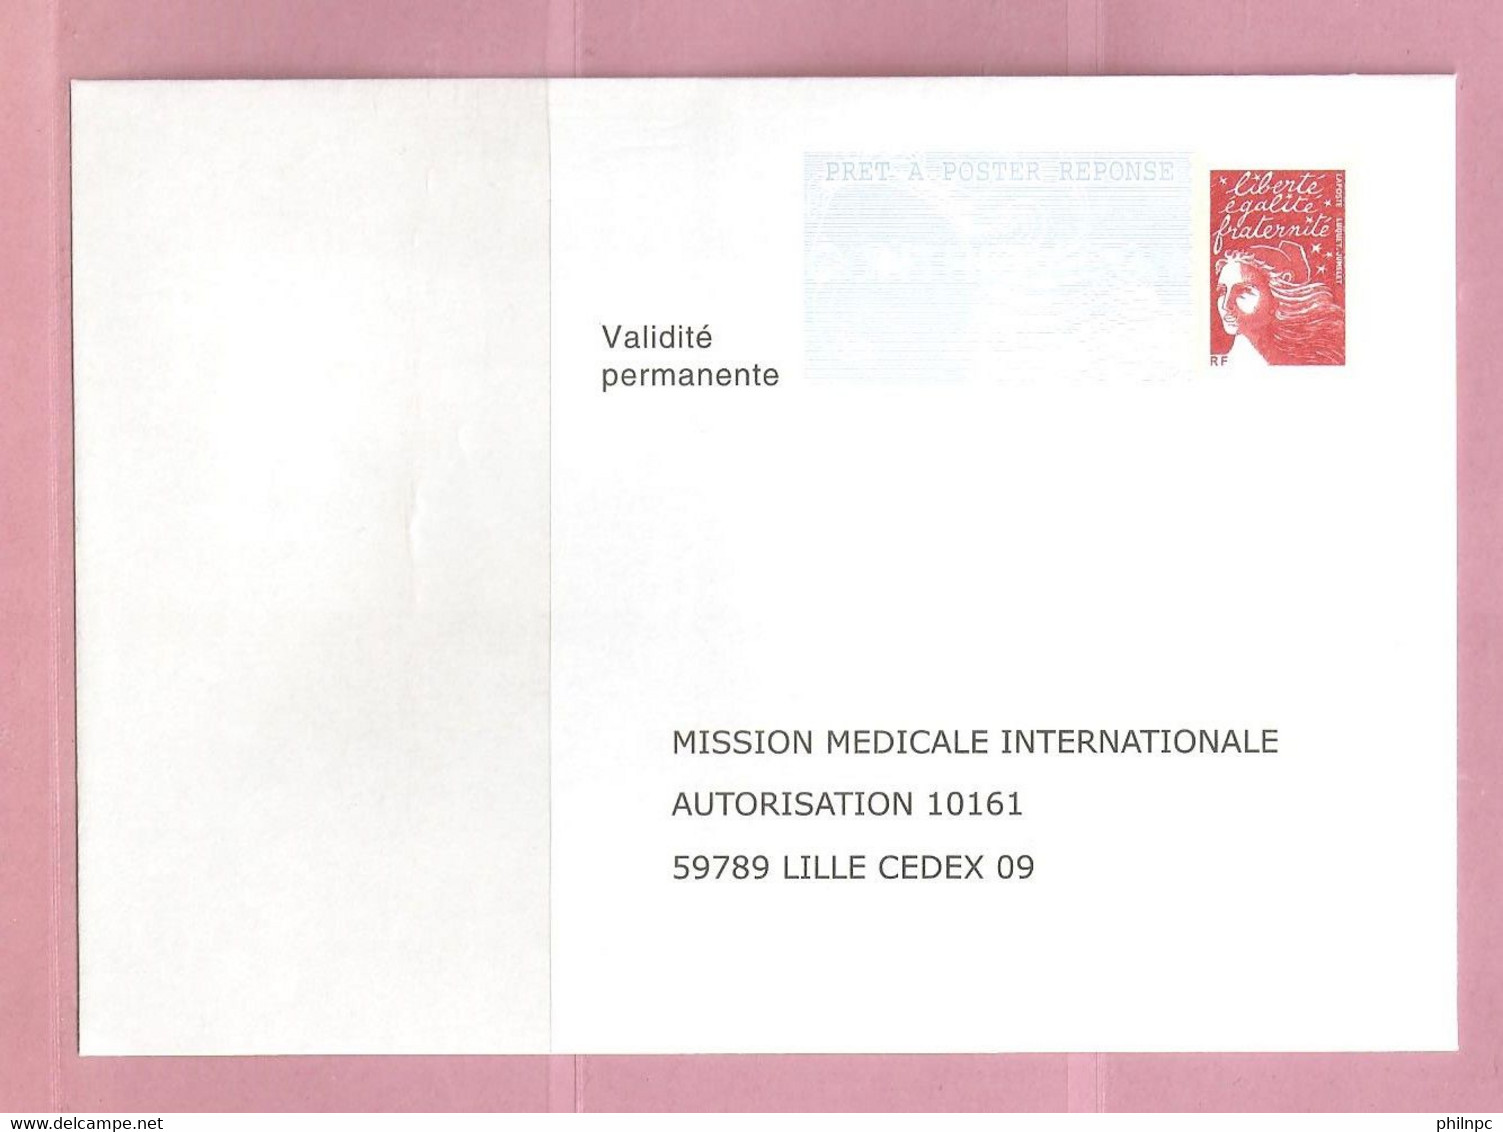 France, Prêt à Poster Réponse, 3417, Postréponse, Mission Médicale Internationale, Marianne De Luquet - Prêts-à-poster:Answer/Luquet